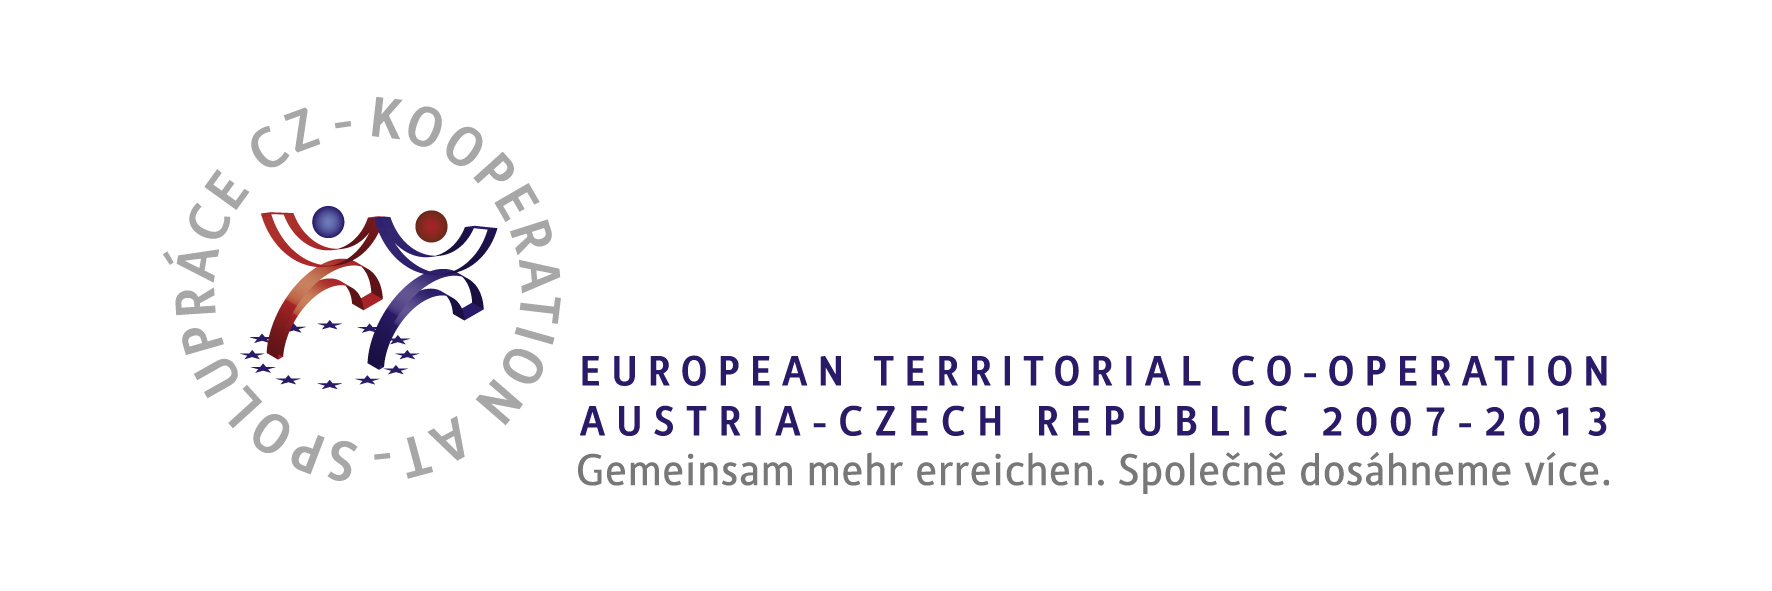 EuropeanTerritorialCo-Operation